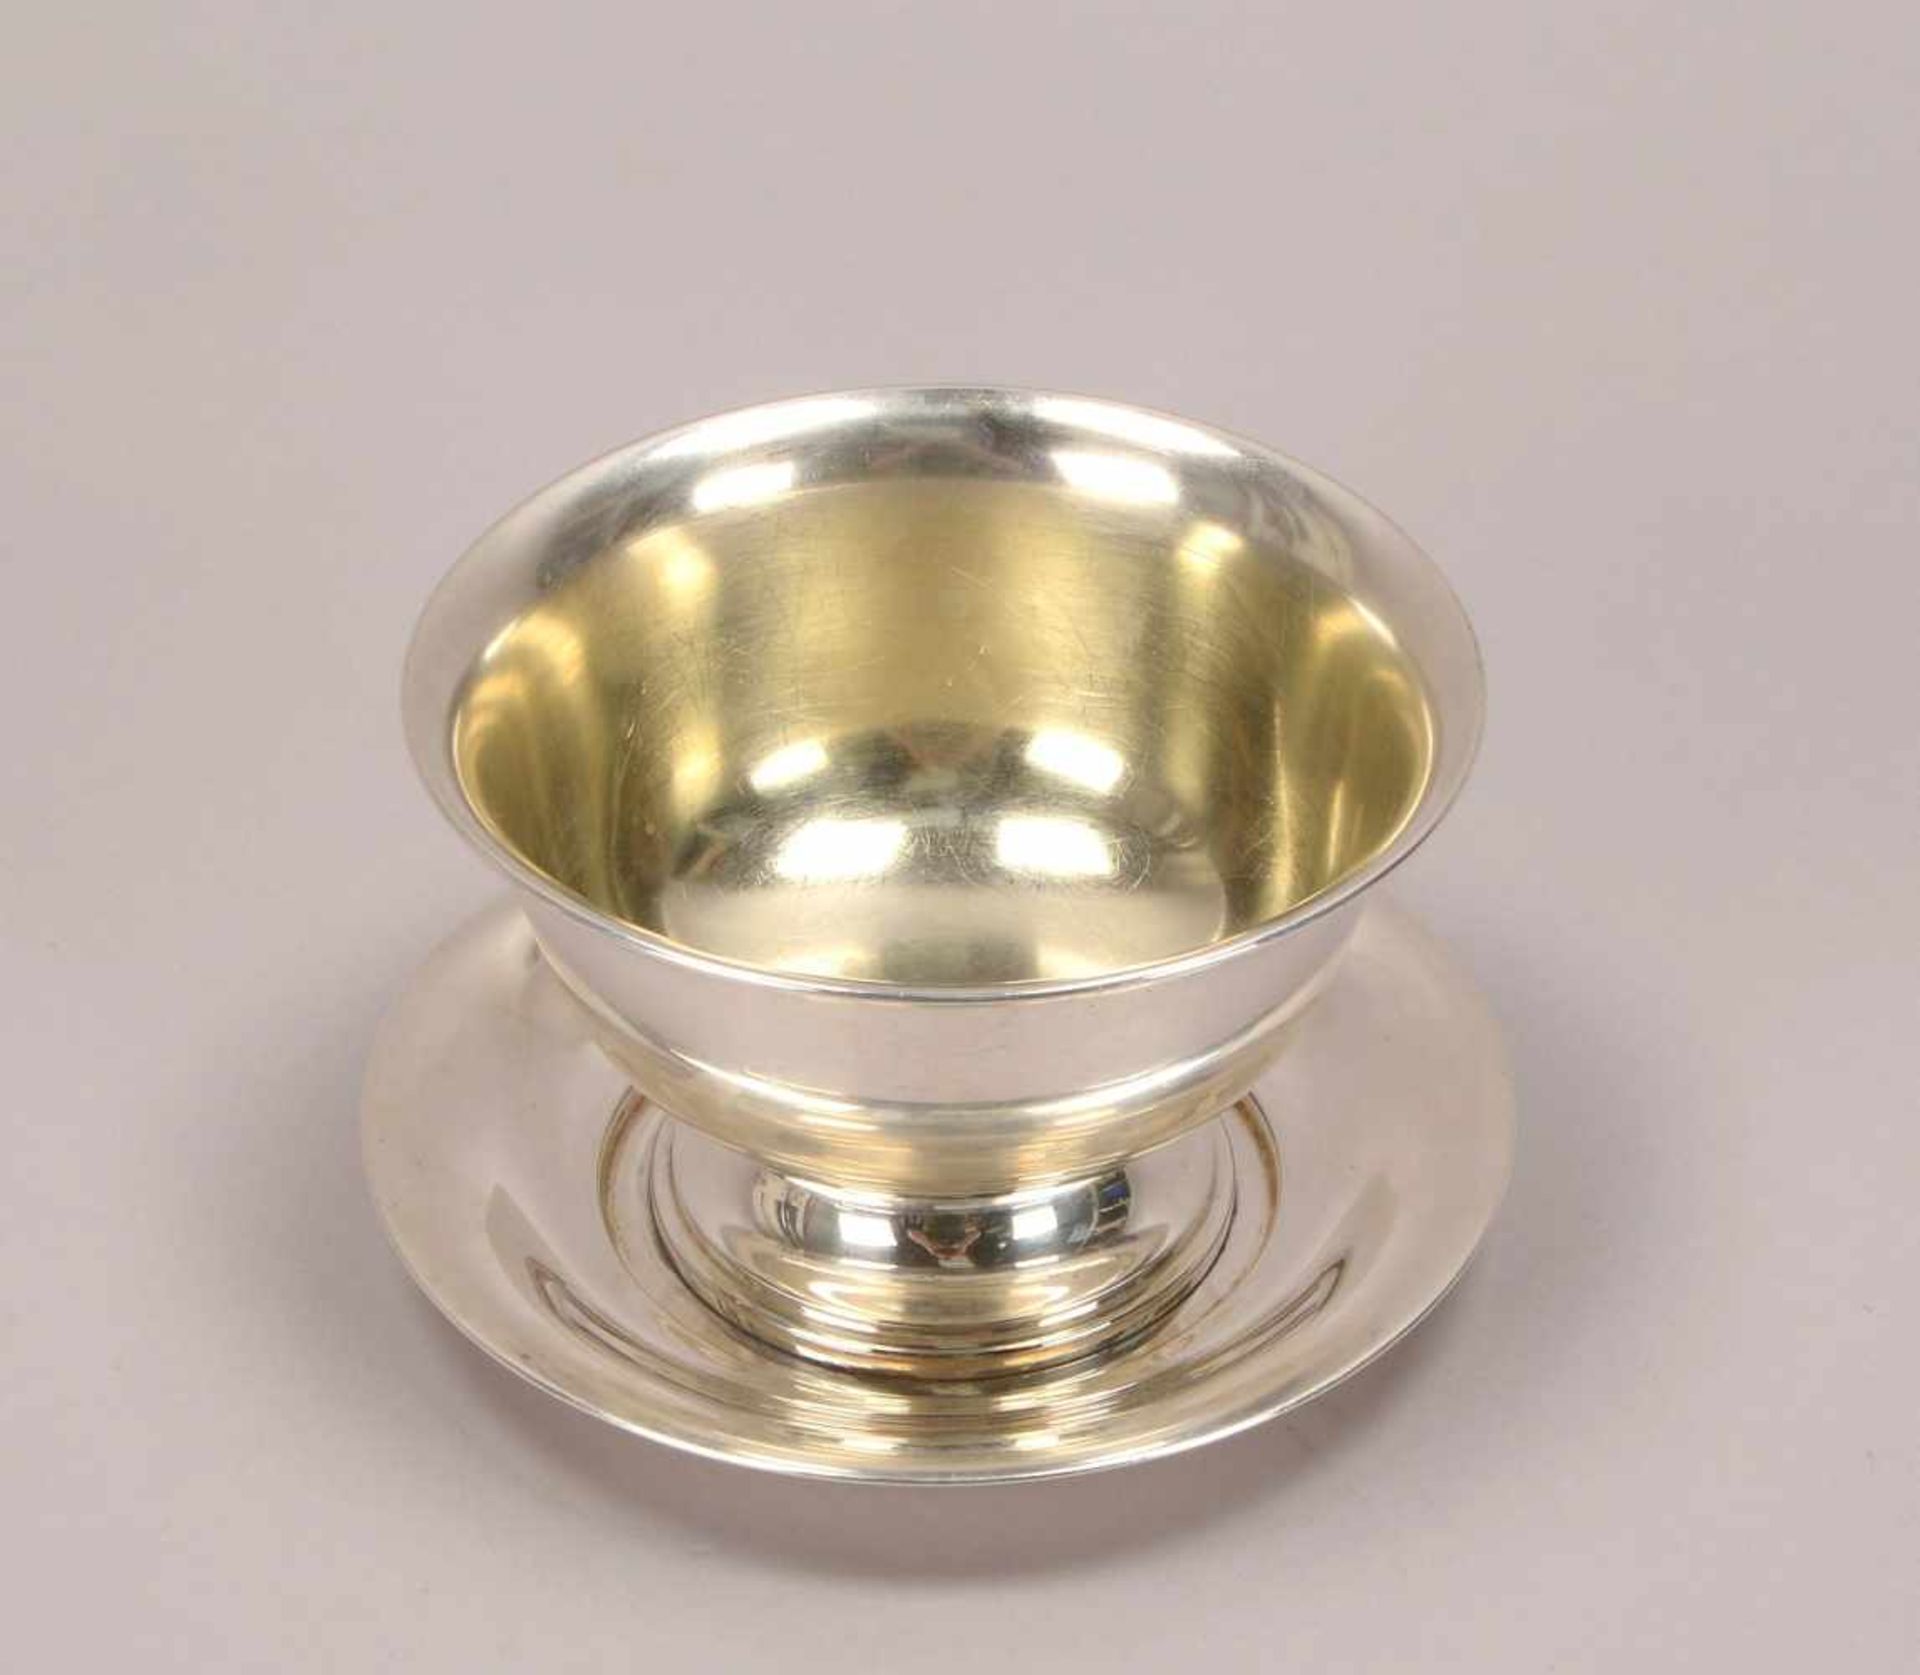 Saucière (Schweden), 830 Silber, punziert Jahreszahl 'D8'; Höhe 8,5 cm, Durchmesser Ø 13,5 cm, - Bild 2 aus 2